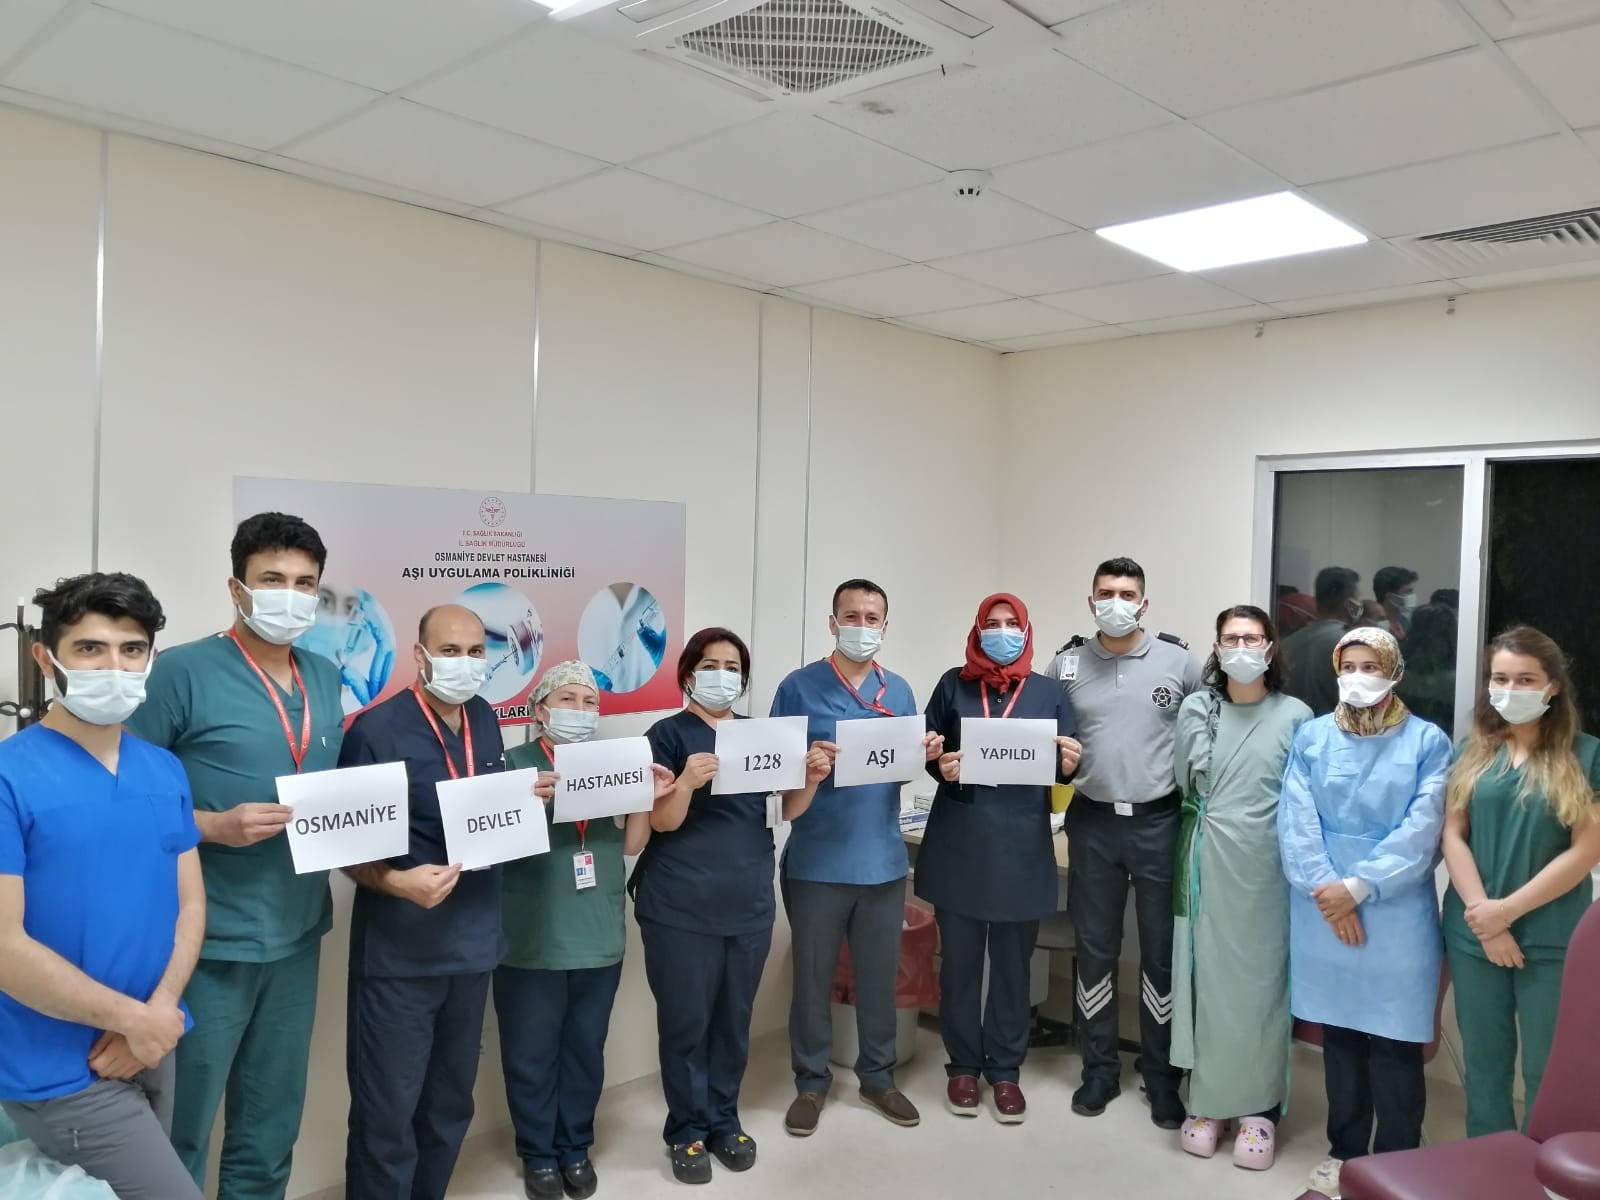 Osmaniye Devlet Hastanesinde 1 Günde  1228 Covid-19 Aşısı yapıldı